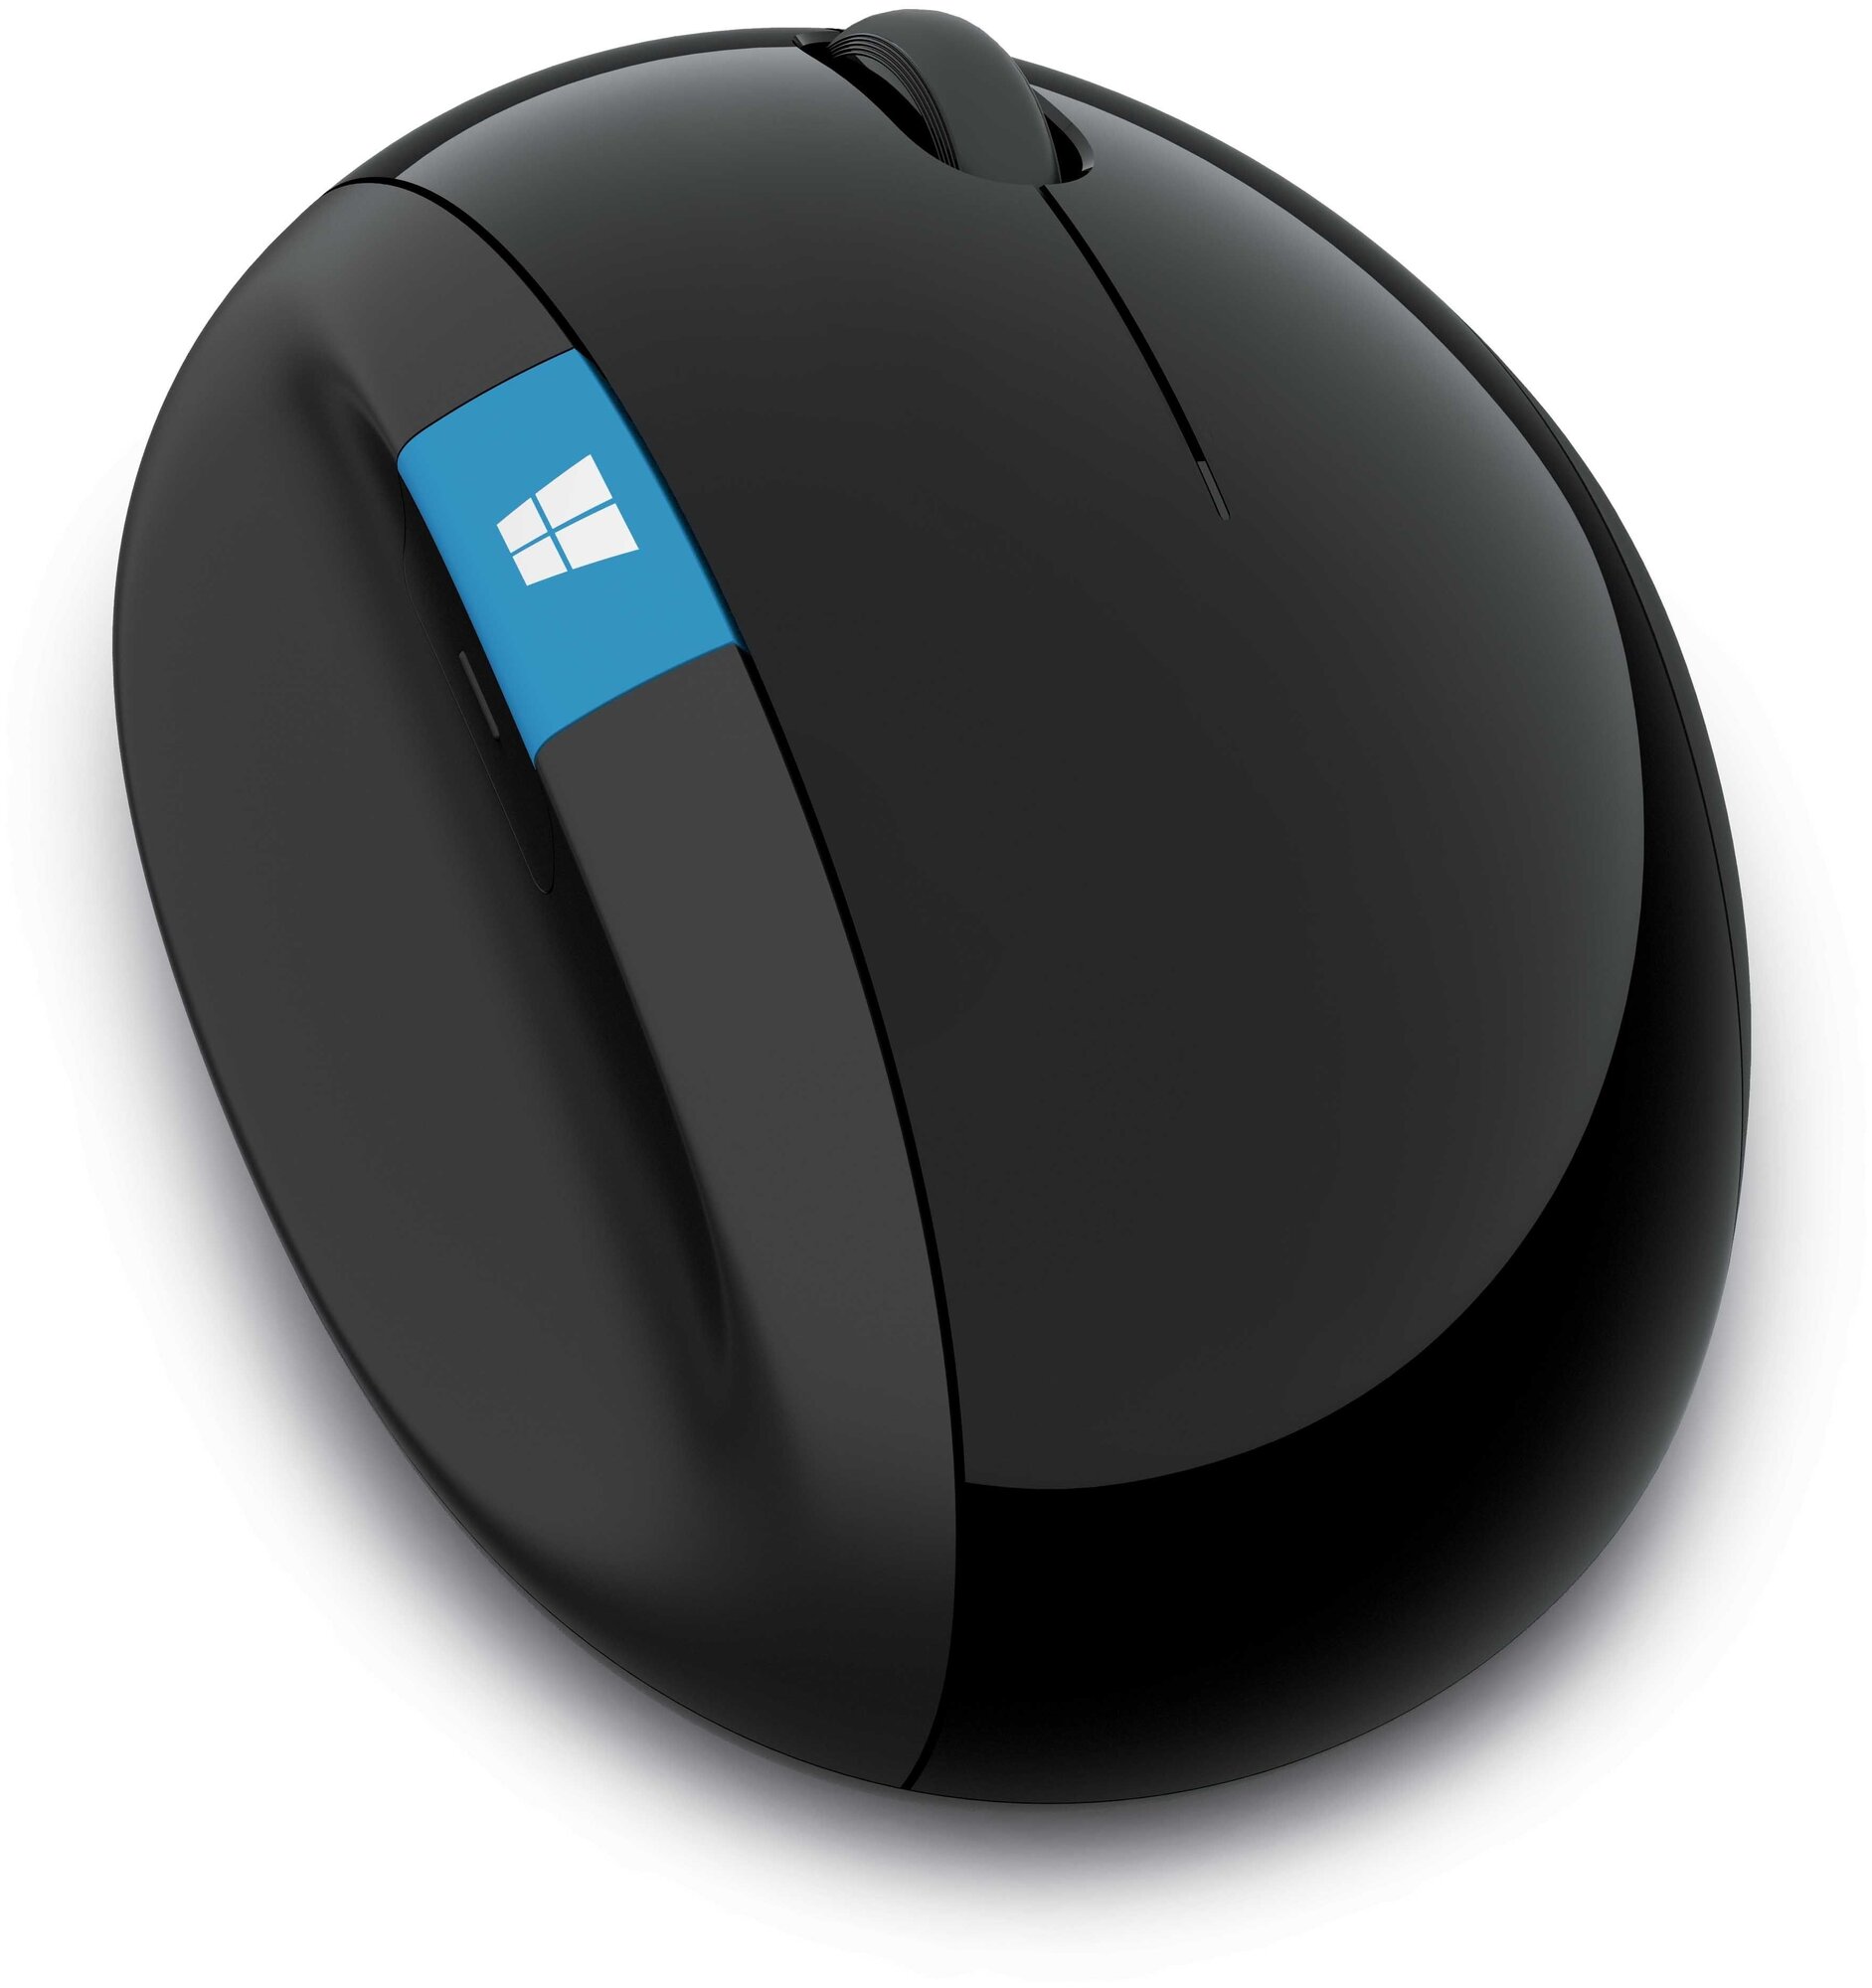 Беспроводная мышь Microsoft Sculpt Ergonomic Mouse L6V-00005 Black USB, черный